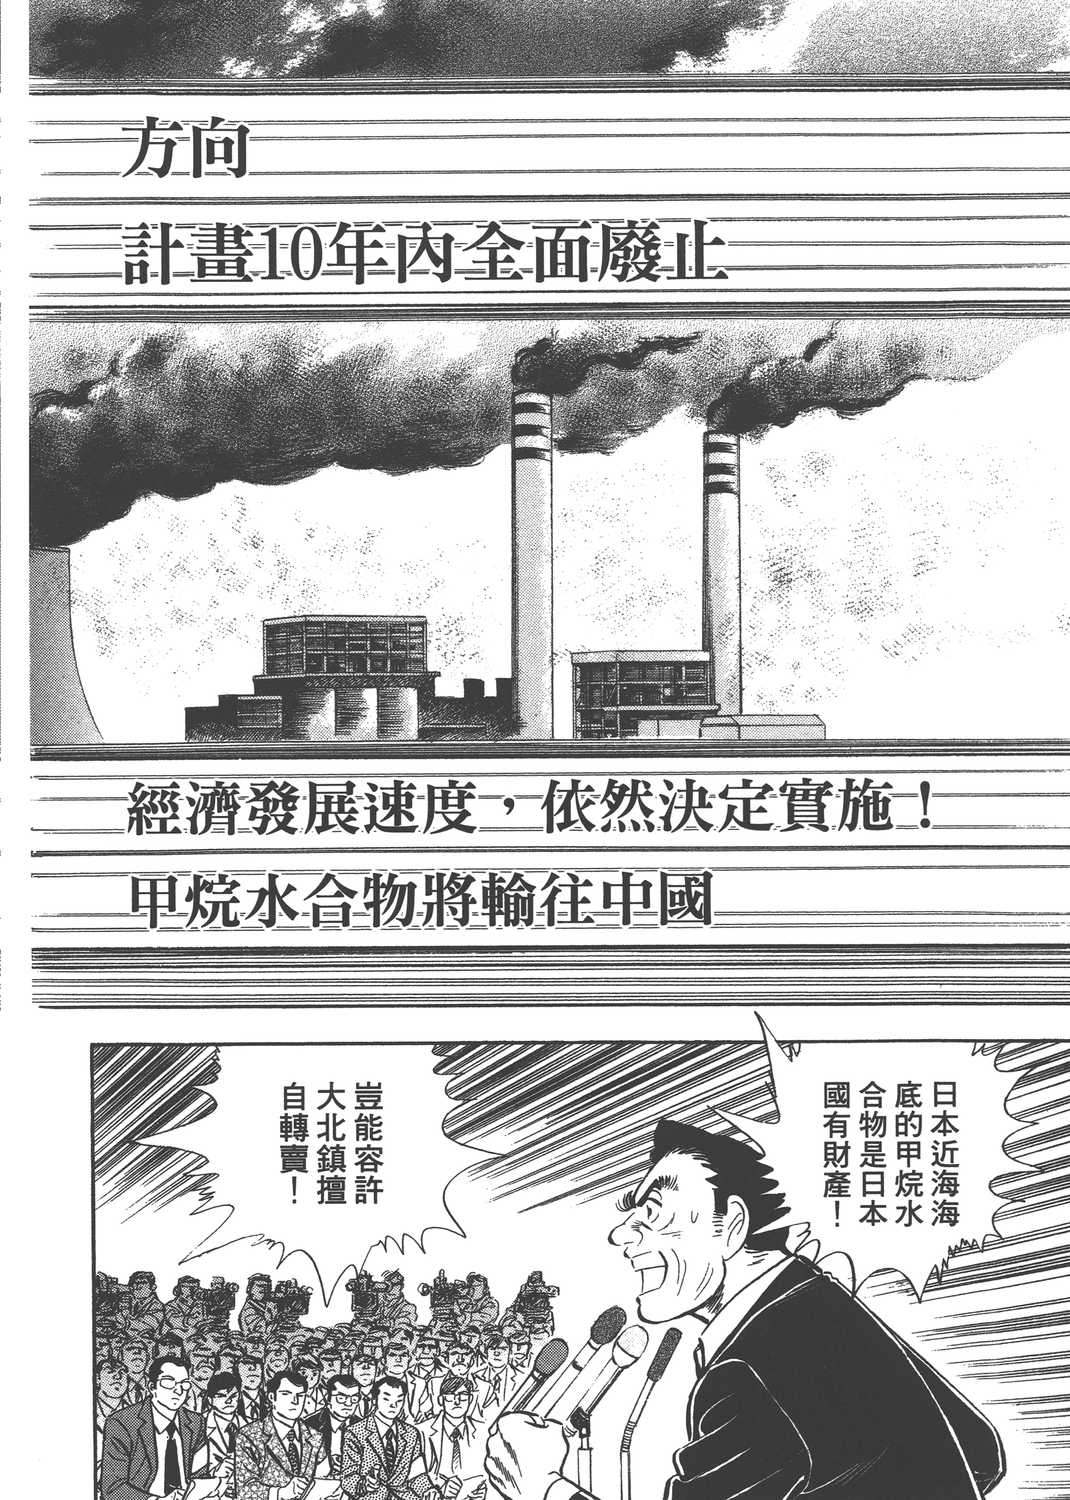 上班族金太郎五十岁漫画单行本第4集 漫画db